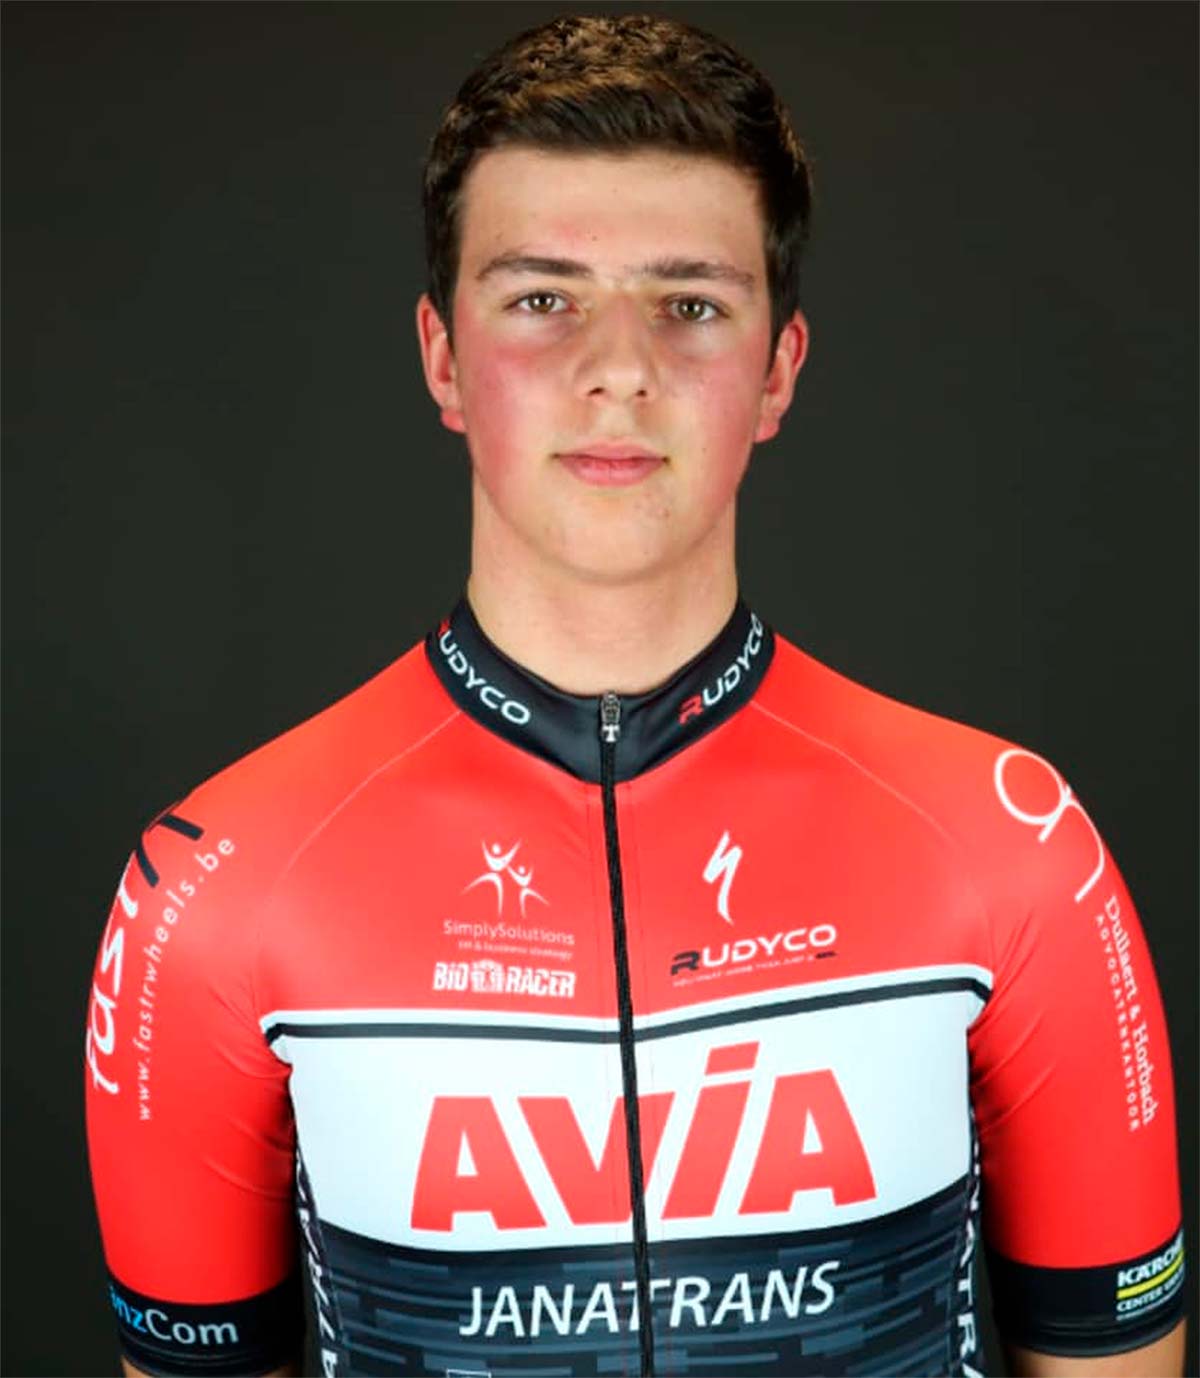 En TodoMountainBike: Un ciclista belga de 15 años del equipo Avia-Rudyco-Janatrans muere mientras dormía tras un día de competición